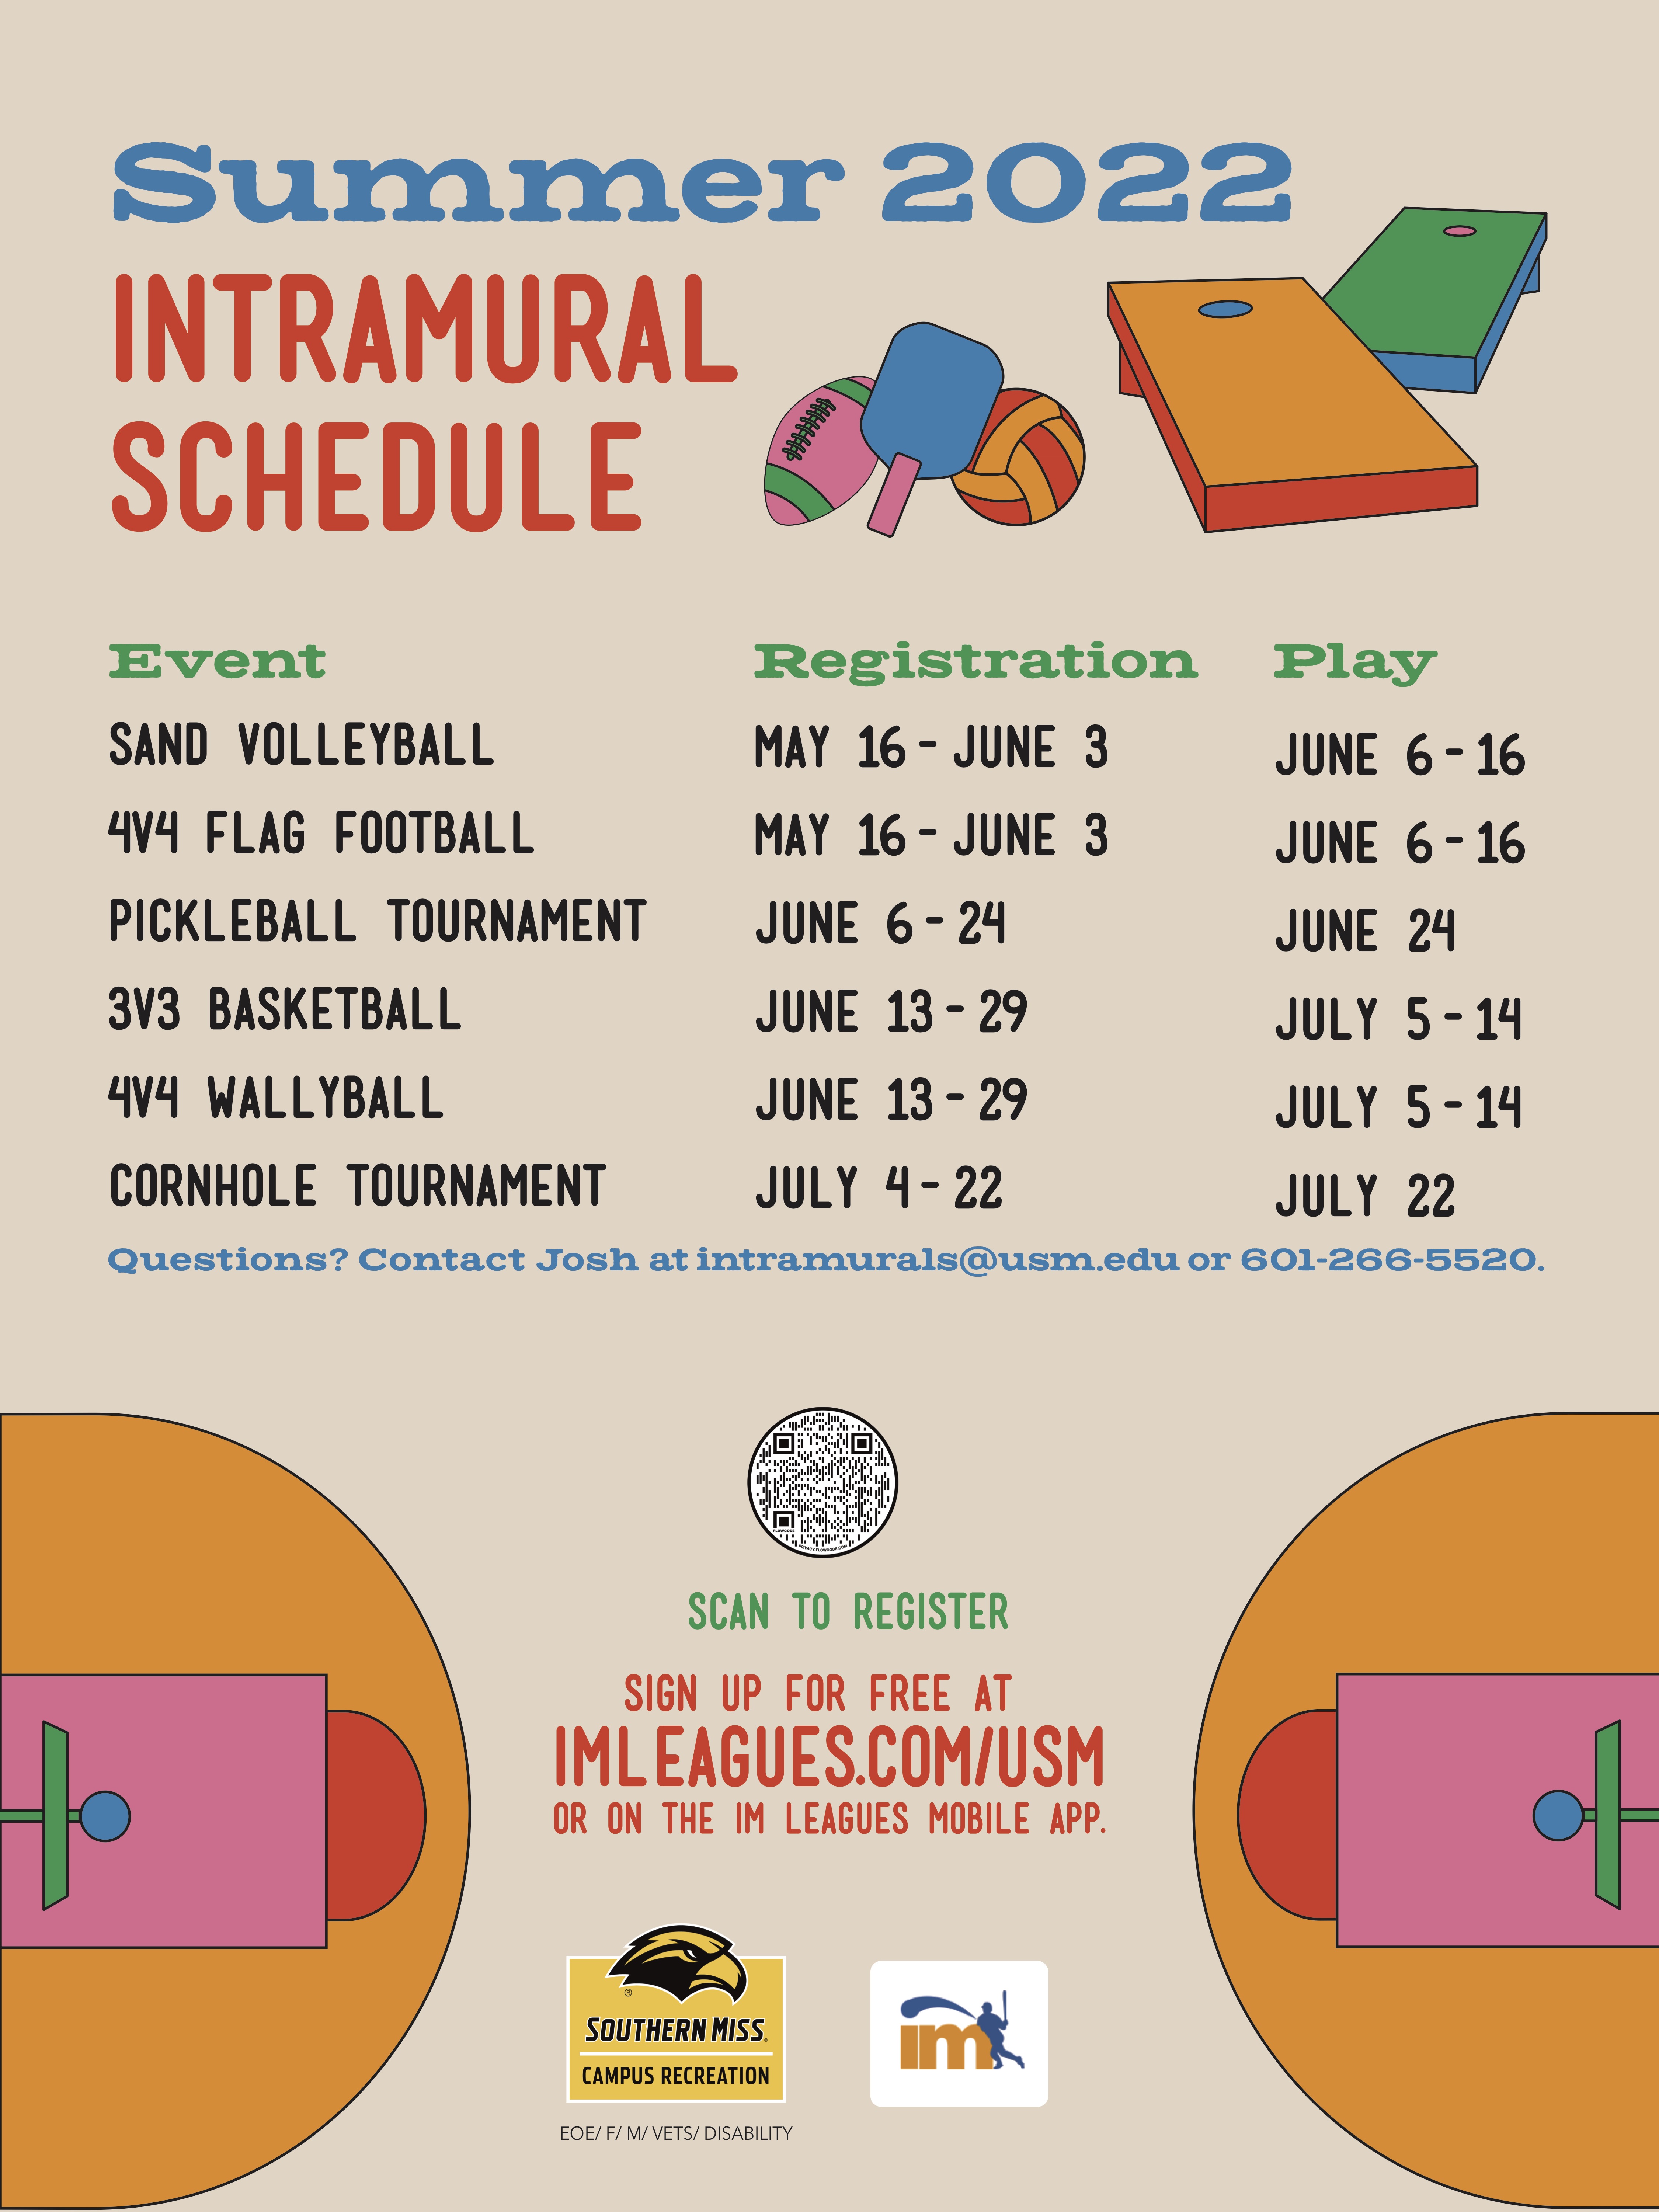 Intramurals Summer 2022 Schedule